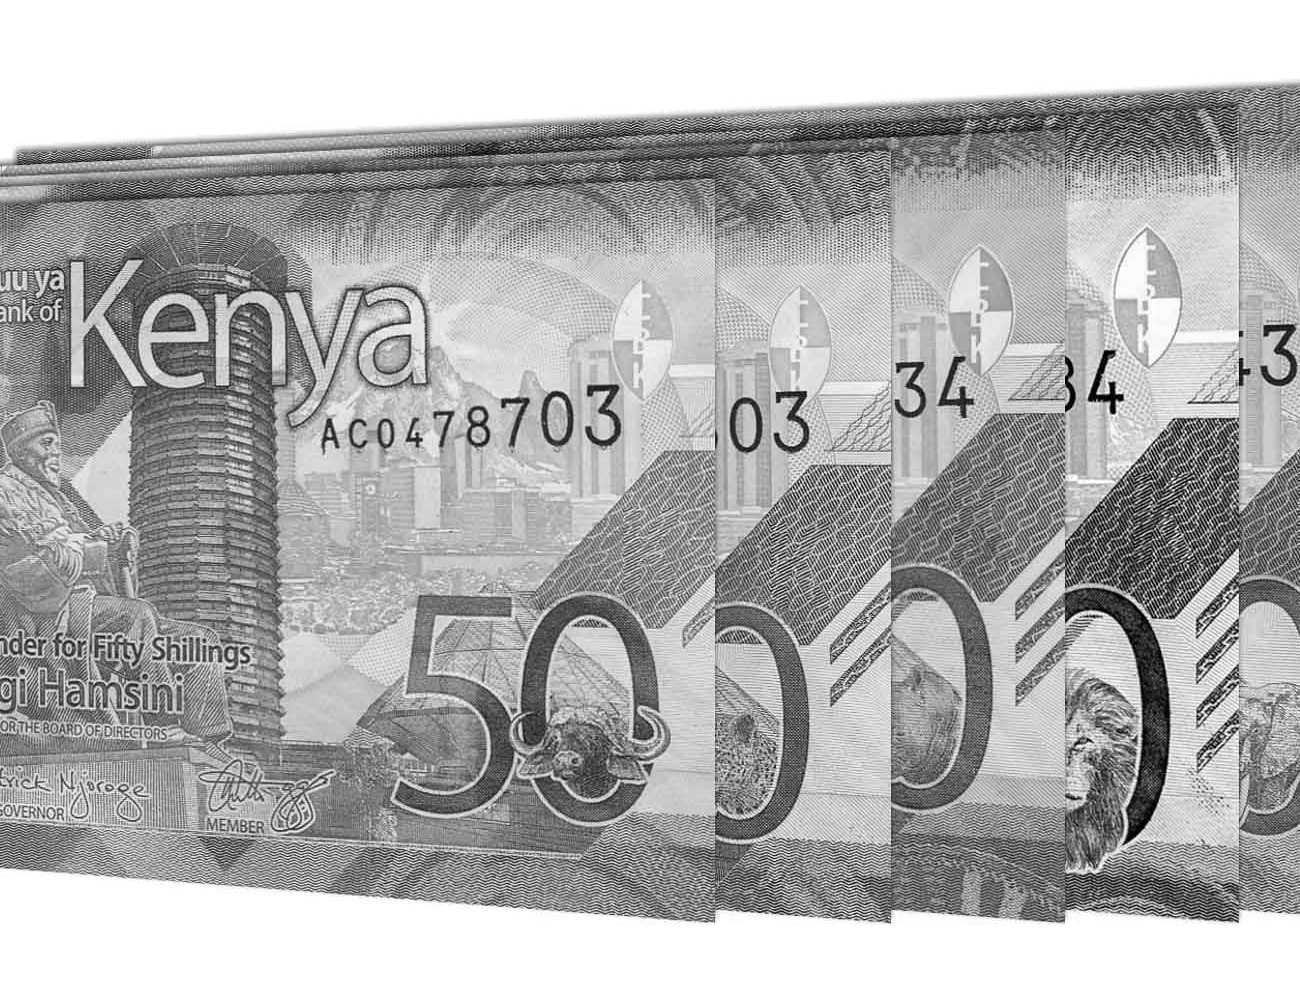 Notes of Kenyan Shilling